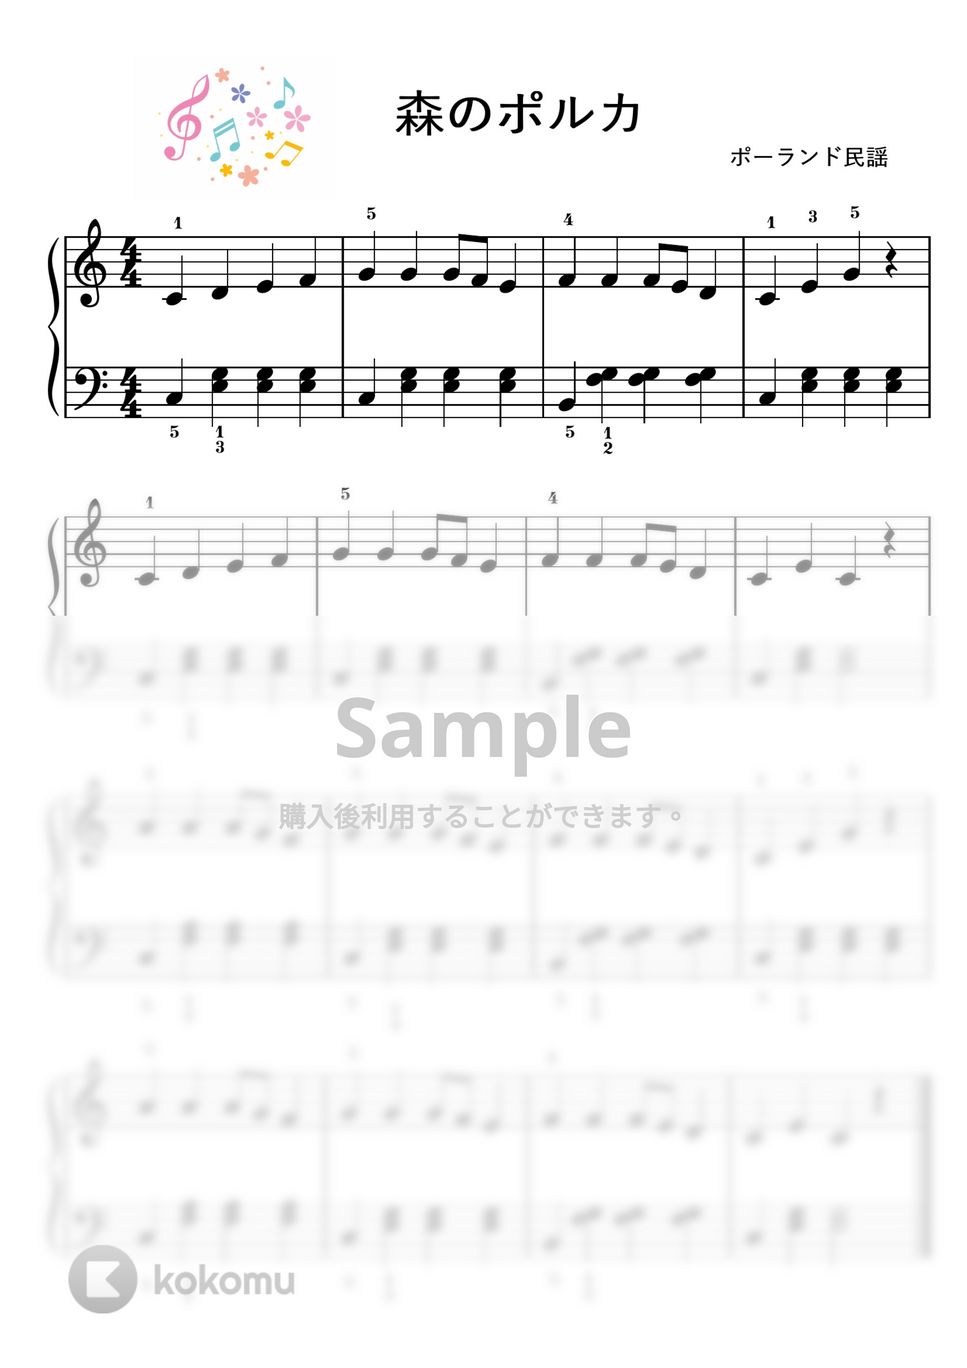 【初級】森のポルカ/移調の練習セット♪ by ピアノのせんせいの楽譜集